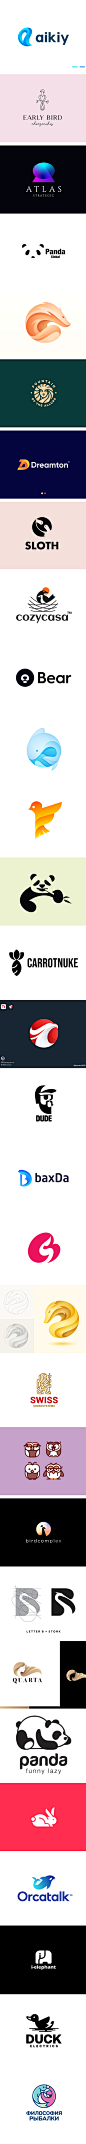 30款-国外优秀logo创意图形设计合集 dribbble-字体传奇网（ZITICQ）